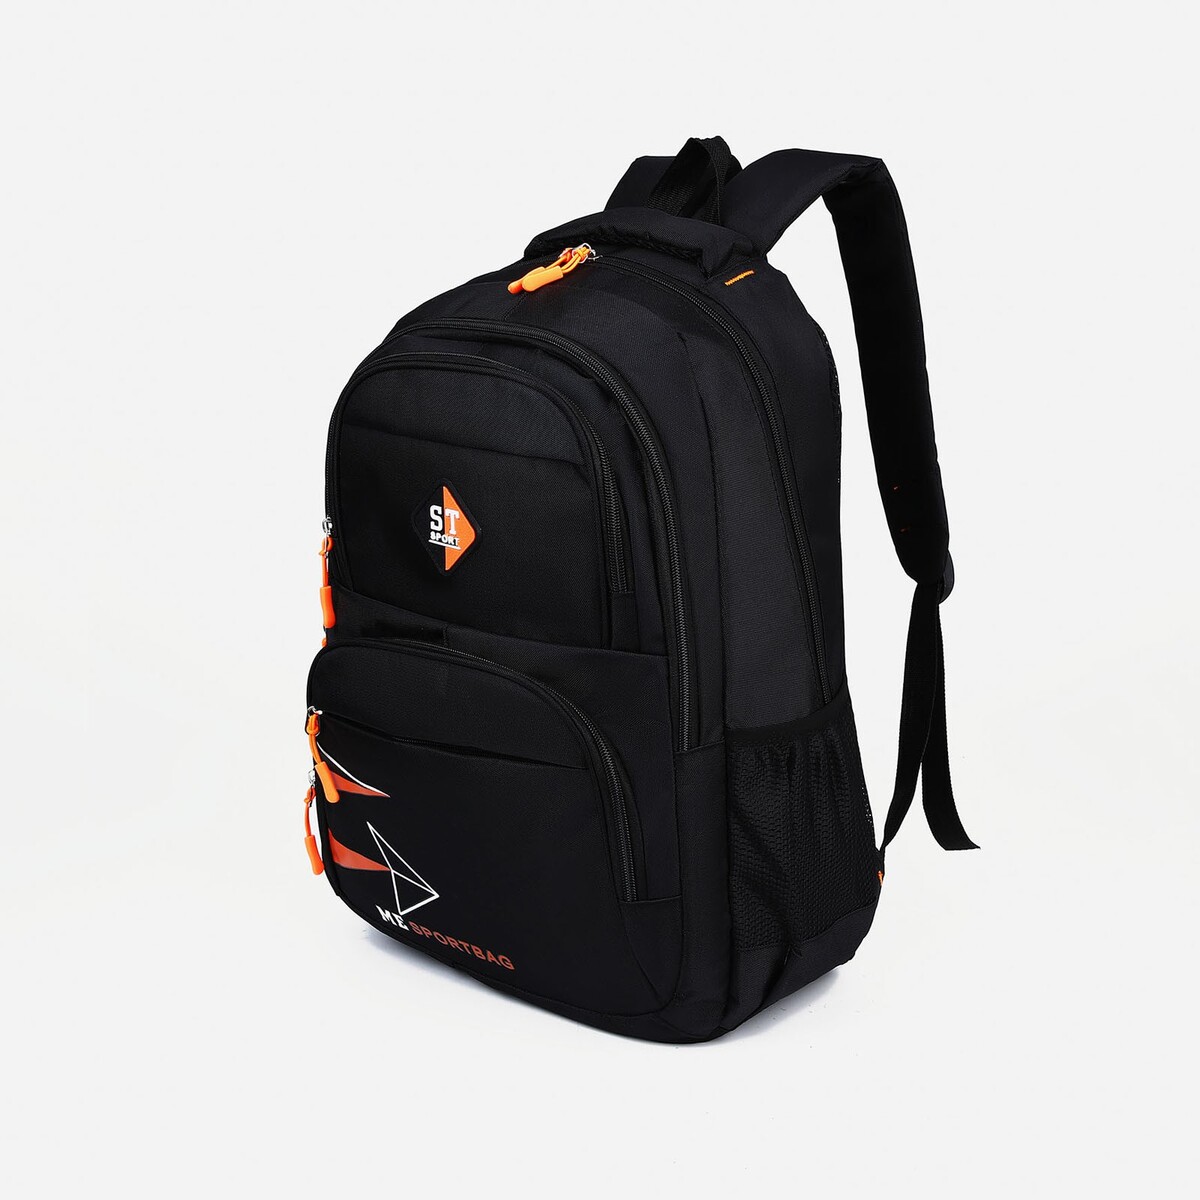 Рюкзак на молнии, 3 наружных кармана, цвет черный/оранжевый